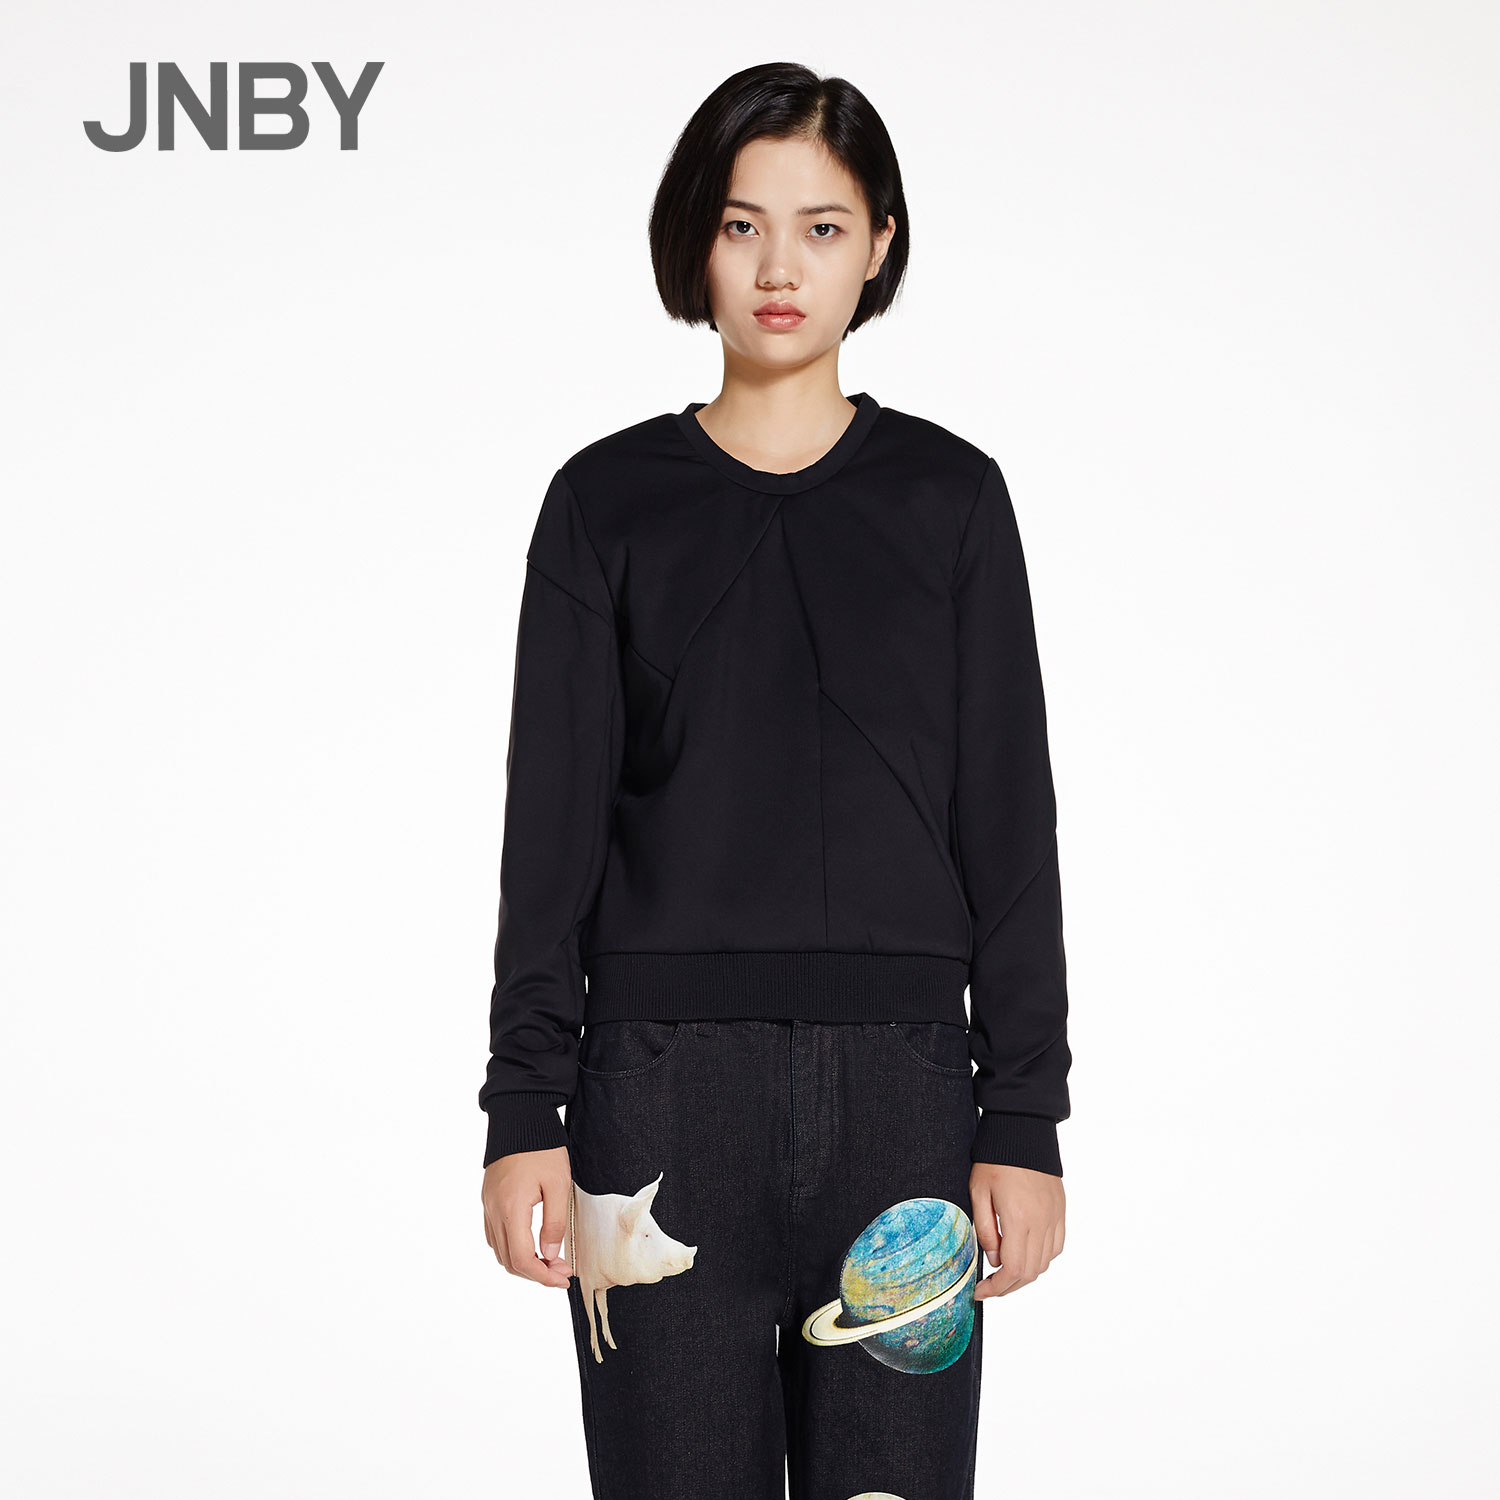 JNBY/江南布衣秋季新款时尚休闲女式长袖纯色短款棉衣5F990124产品展示图2